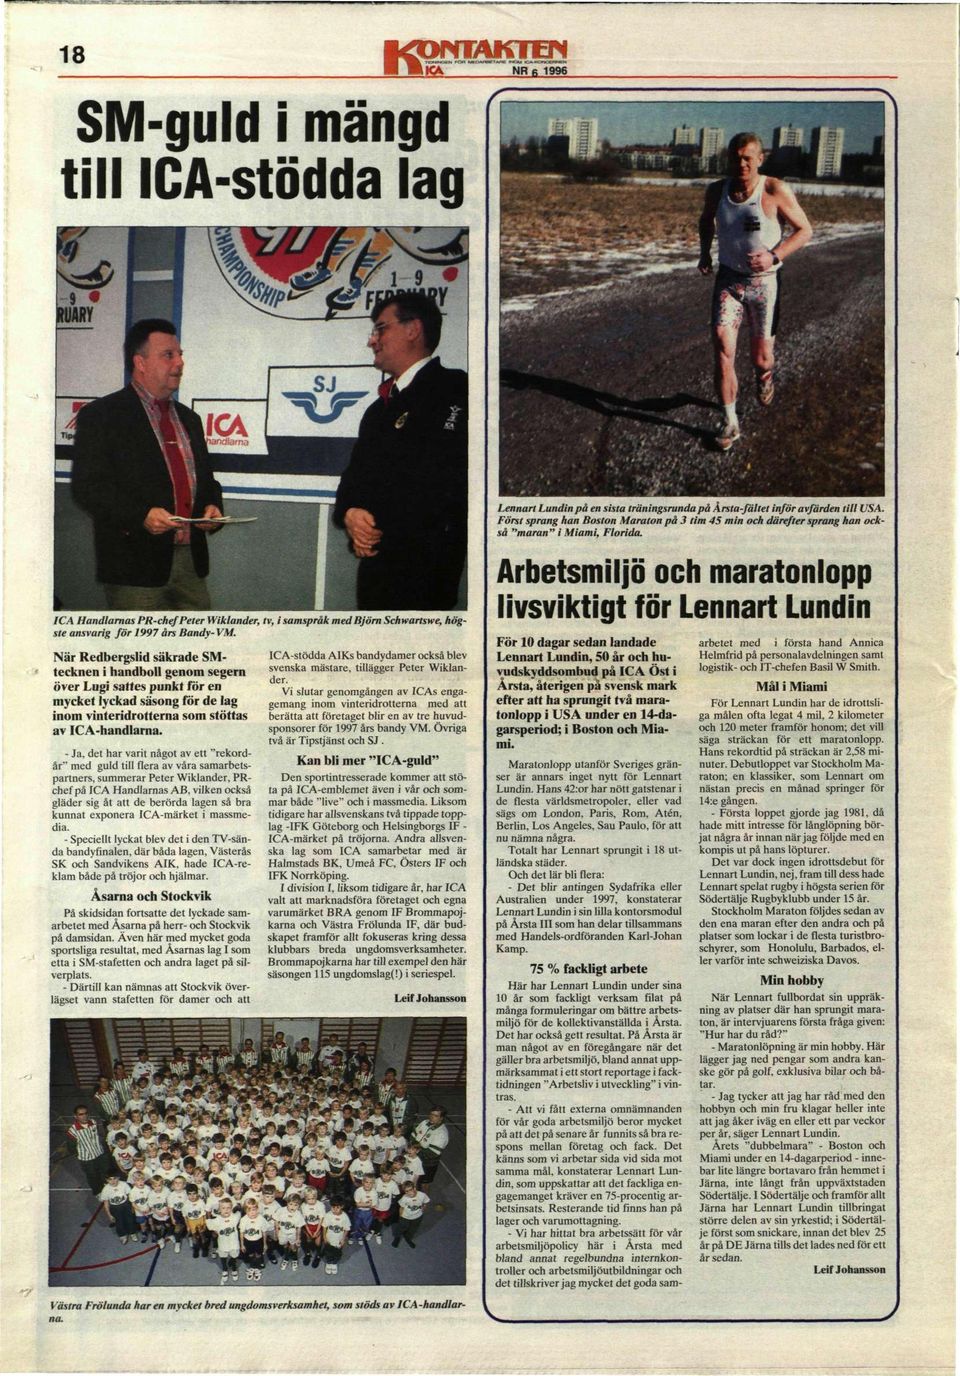 ICA Handlarnas PR-chef Peter Wiklander, tv, i samspråk med Björn Schwartswe, högste ansvarig för 1997 års Bandy-VM.